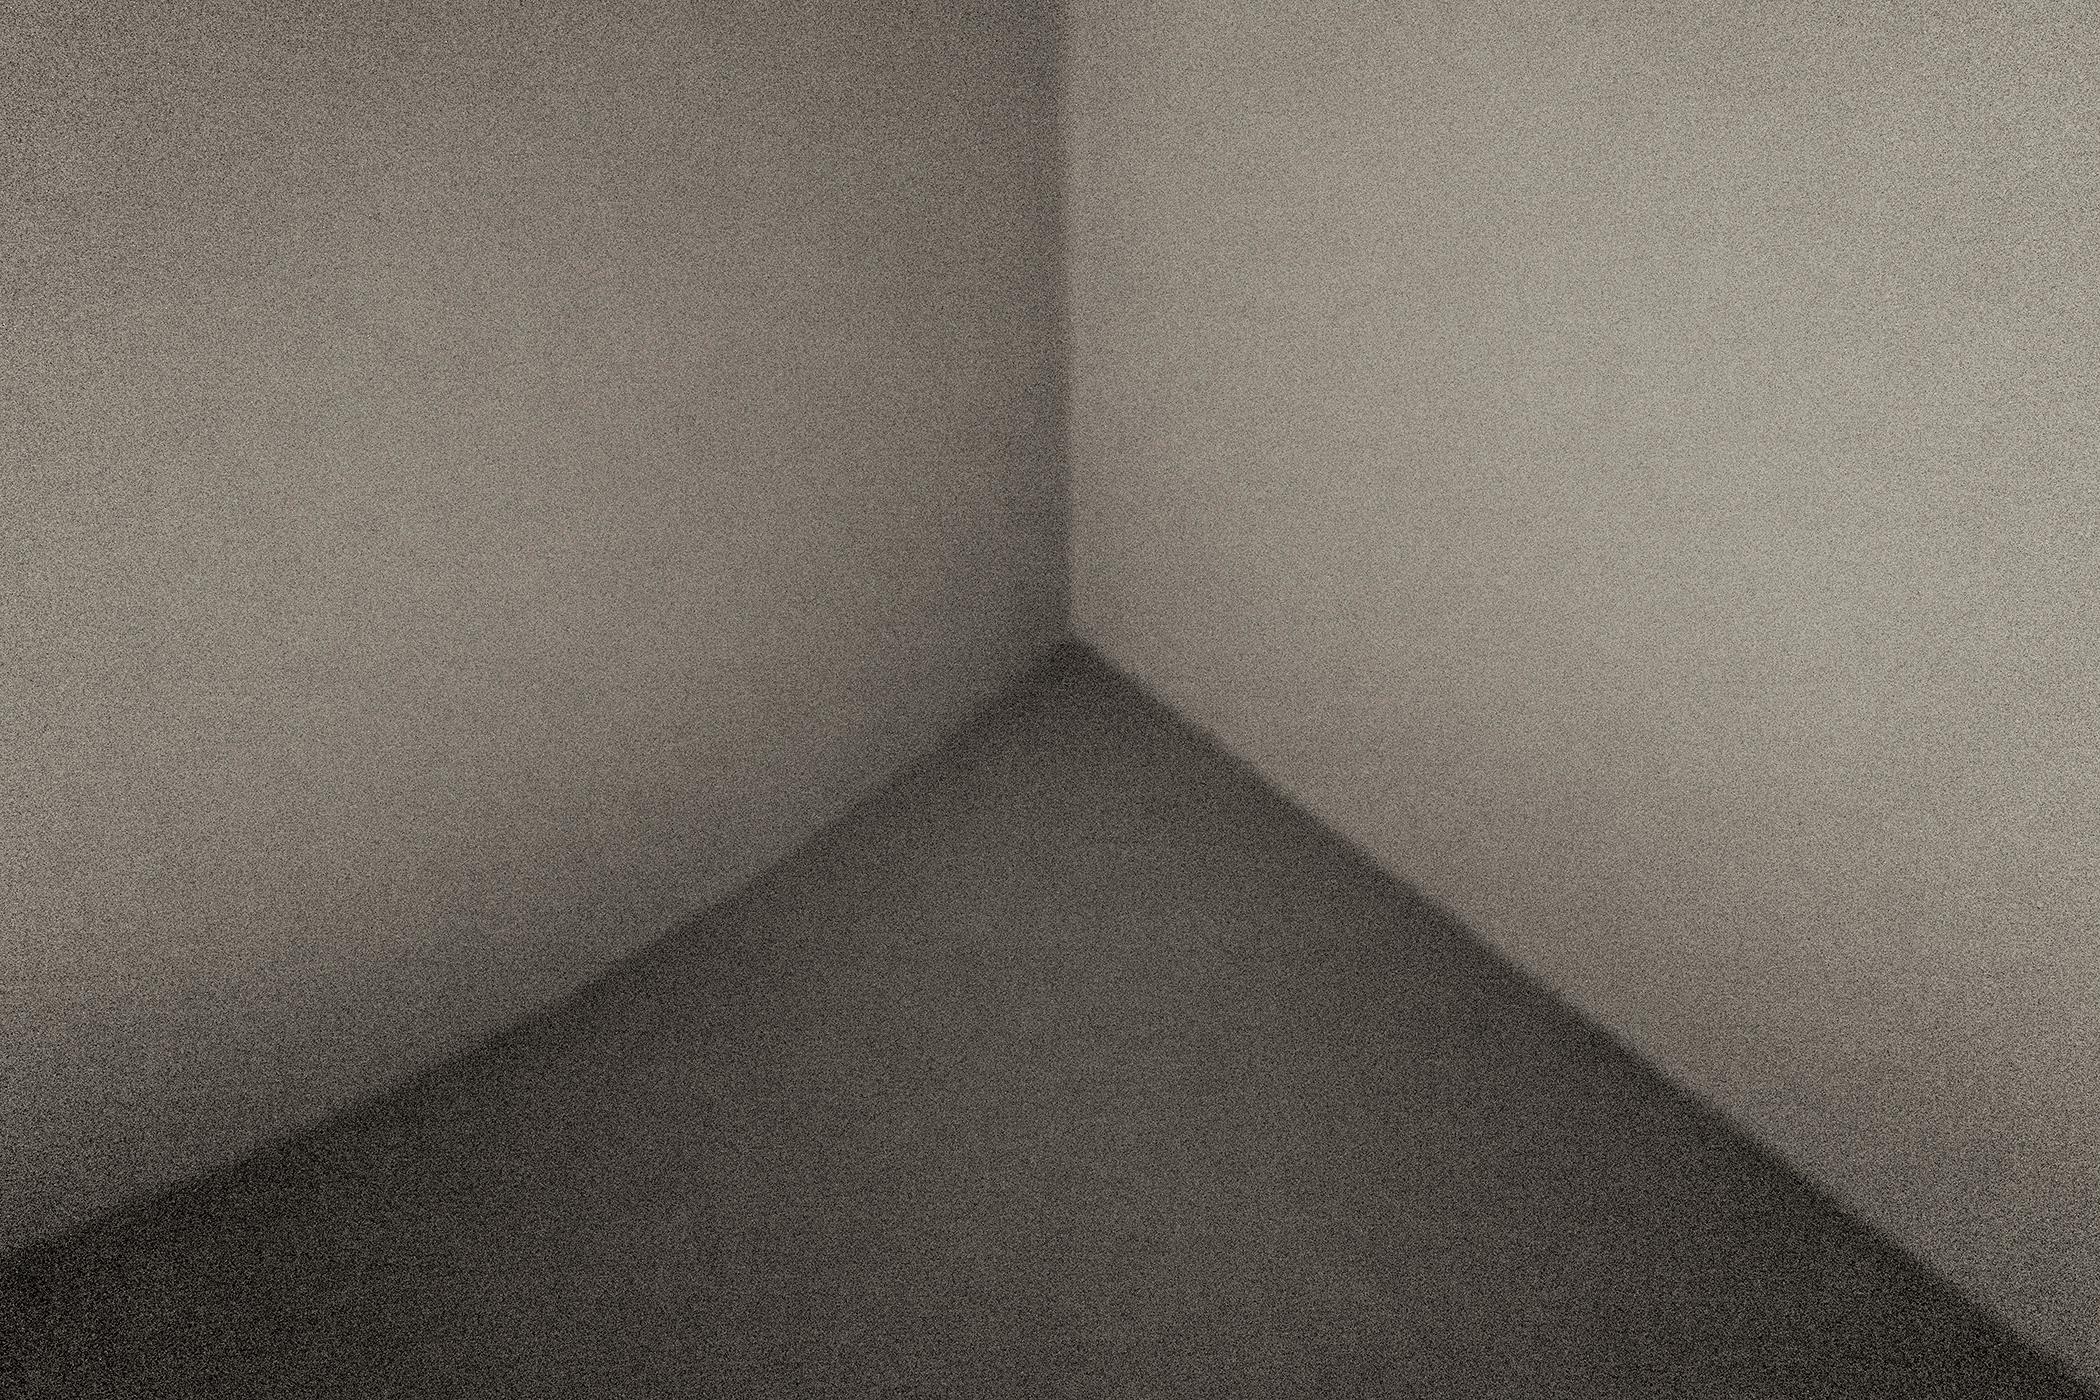 Corner No. 01 at the Guggenheim Museum